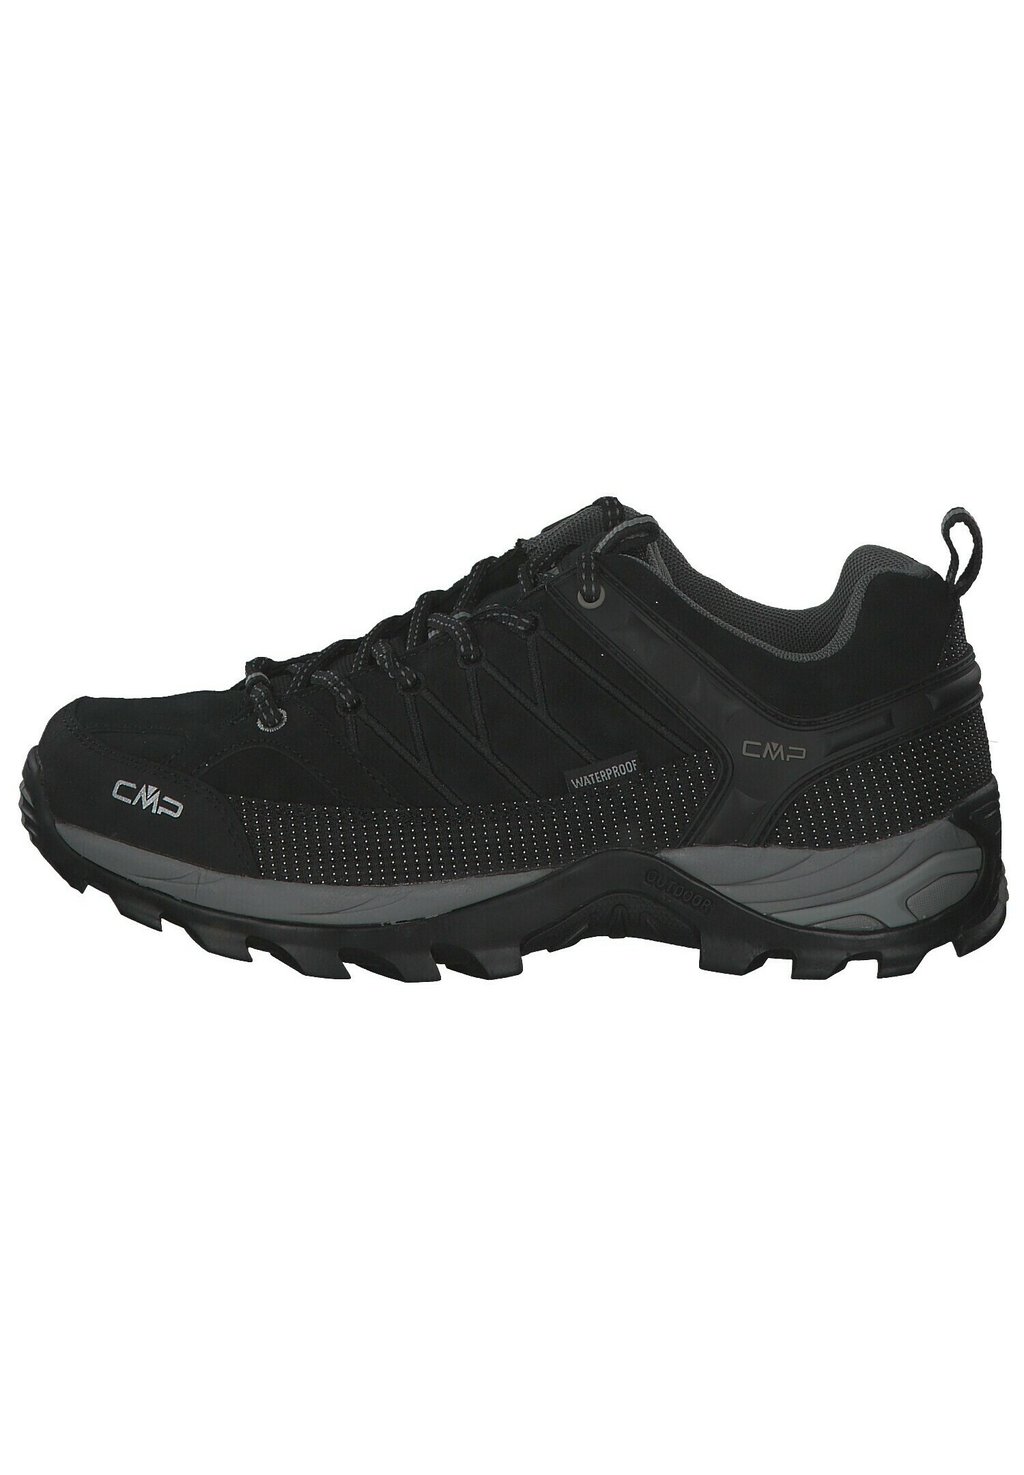 Походная обувь Rigel Low Trekking Shoes Wp CMP, цвет black/dark grey